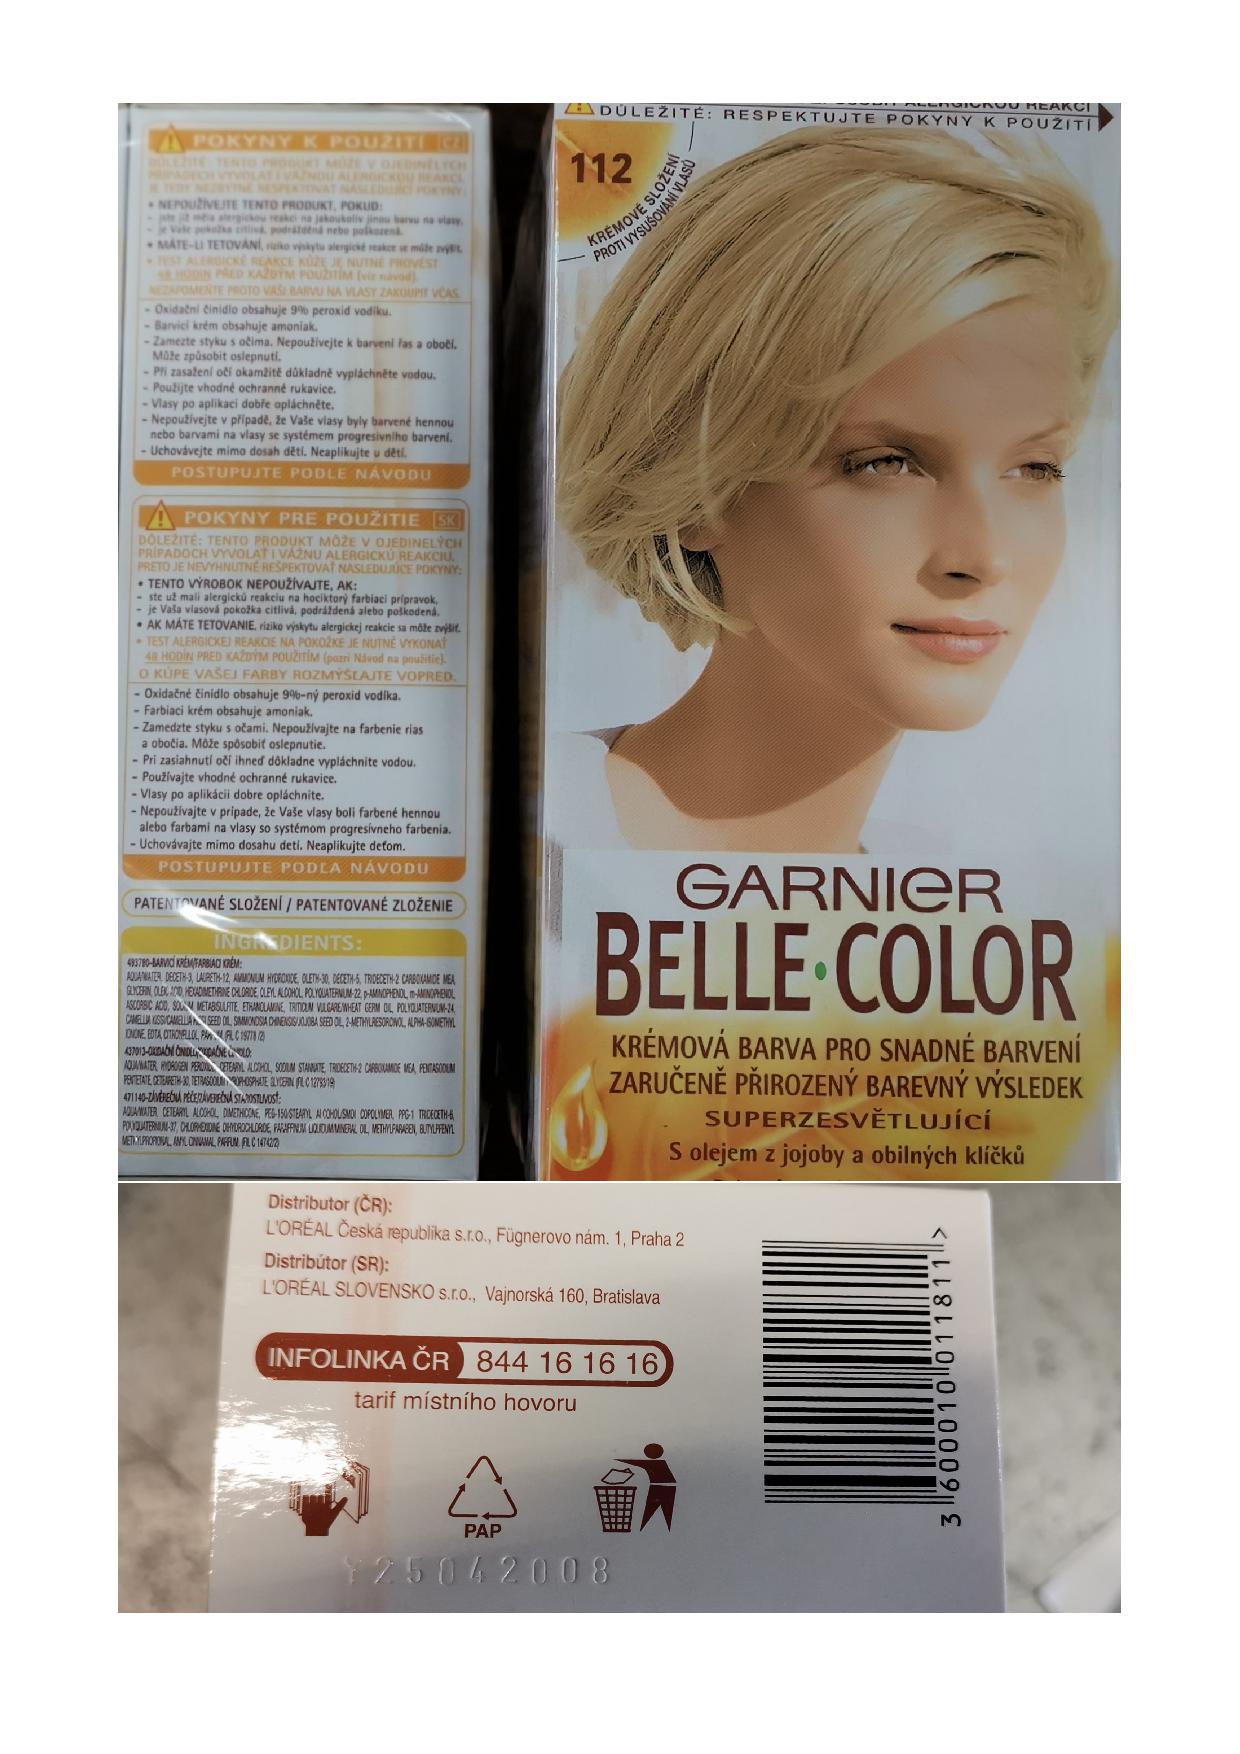 Hair dye ; Garnier ; Garnier Belle Color